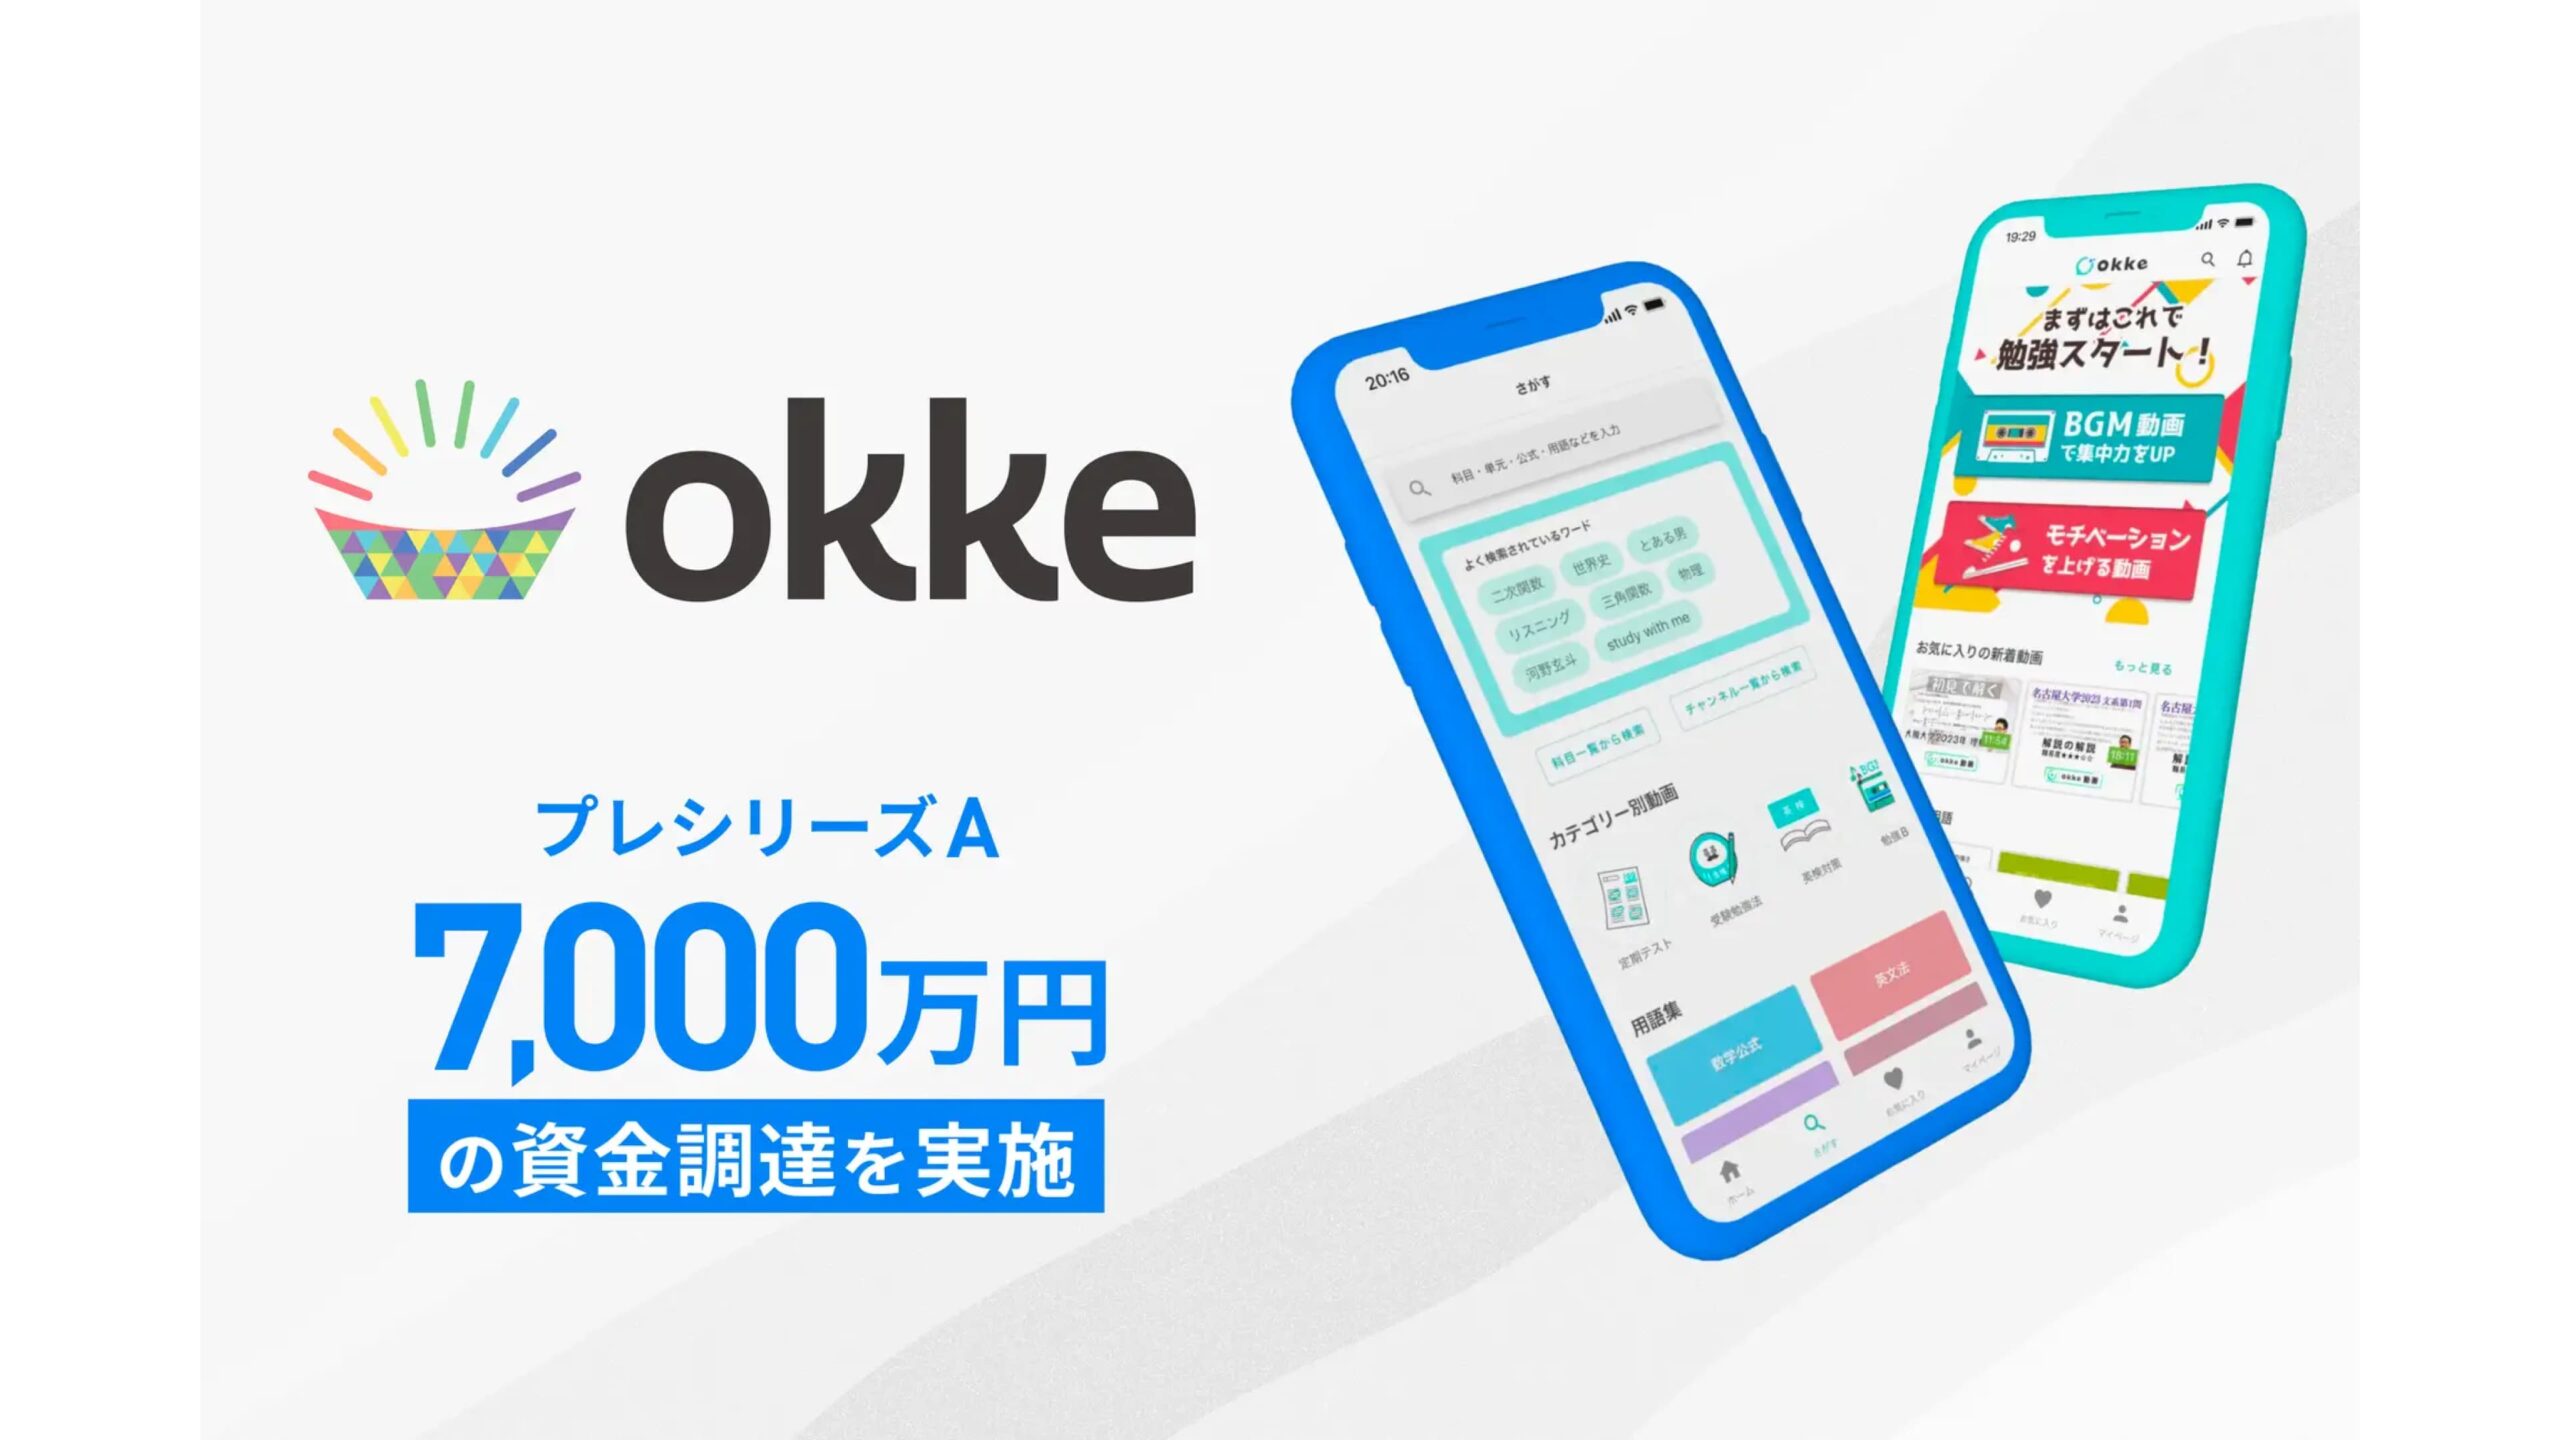 教育サービスを展開する株式会社okkeがプレシリーズAでにて7,000万円の資金調達